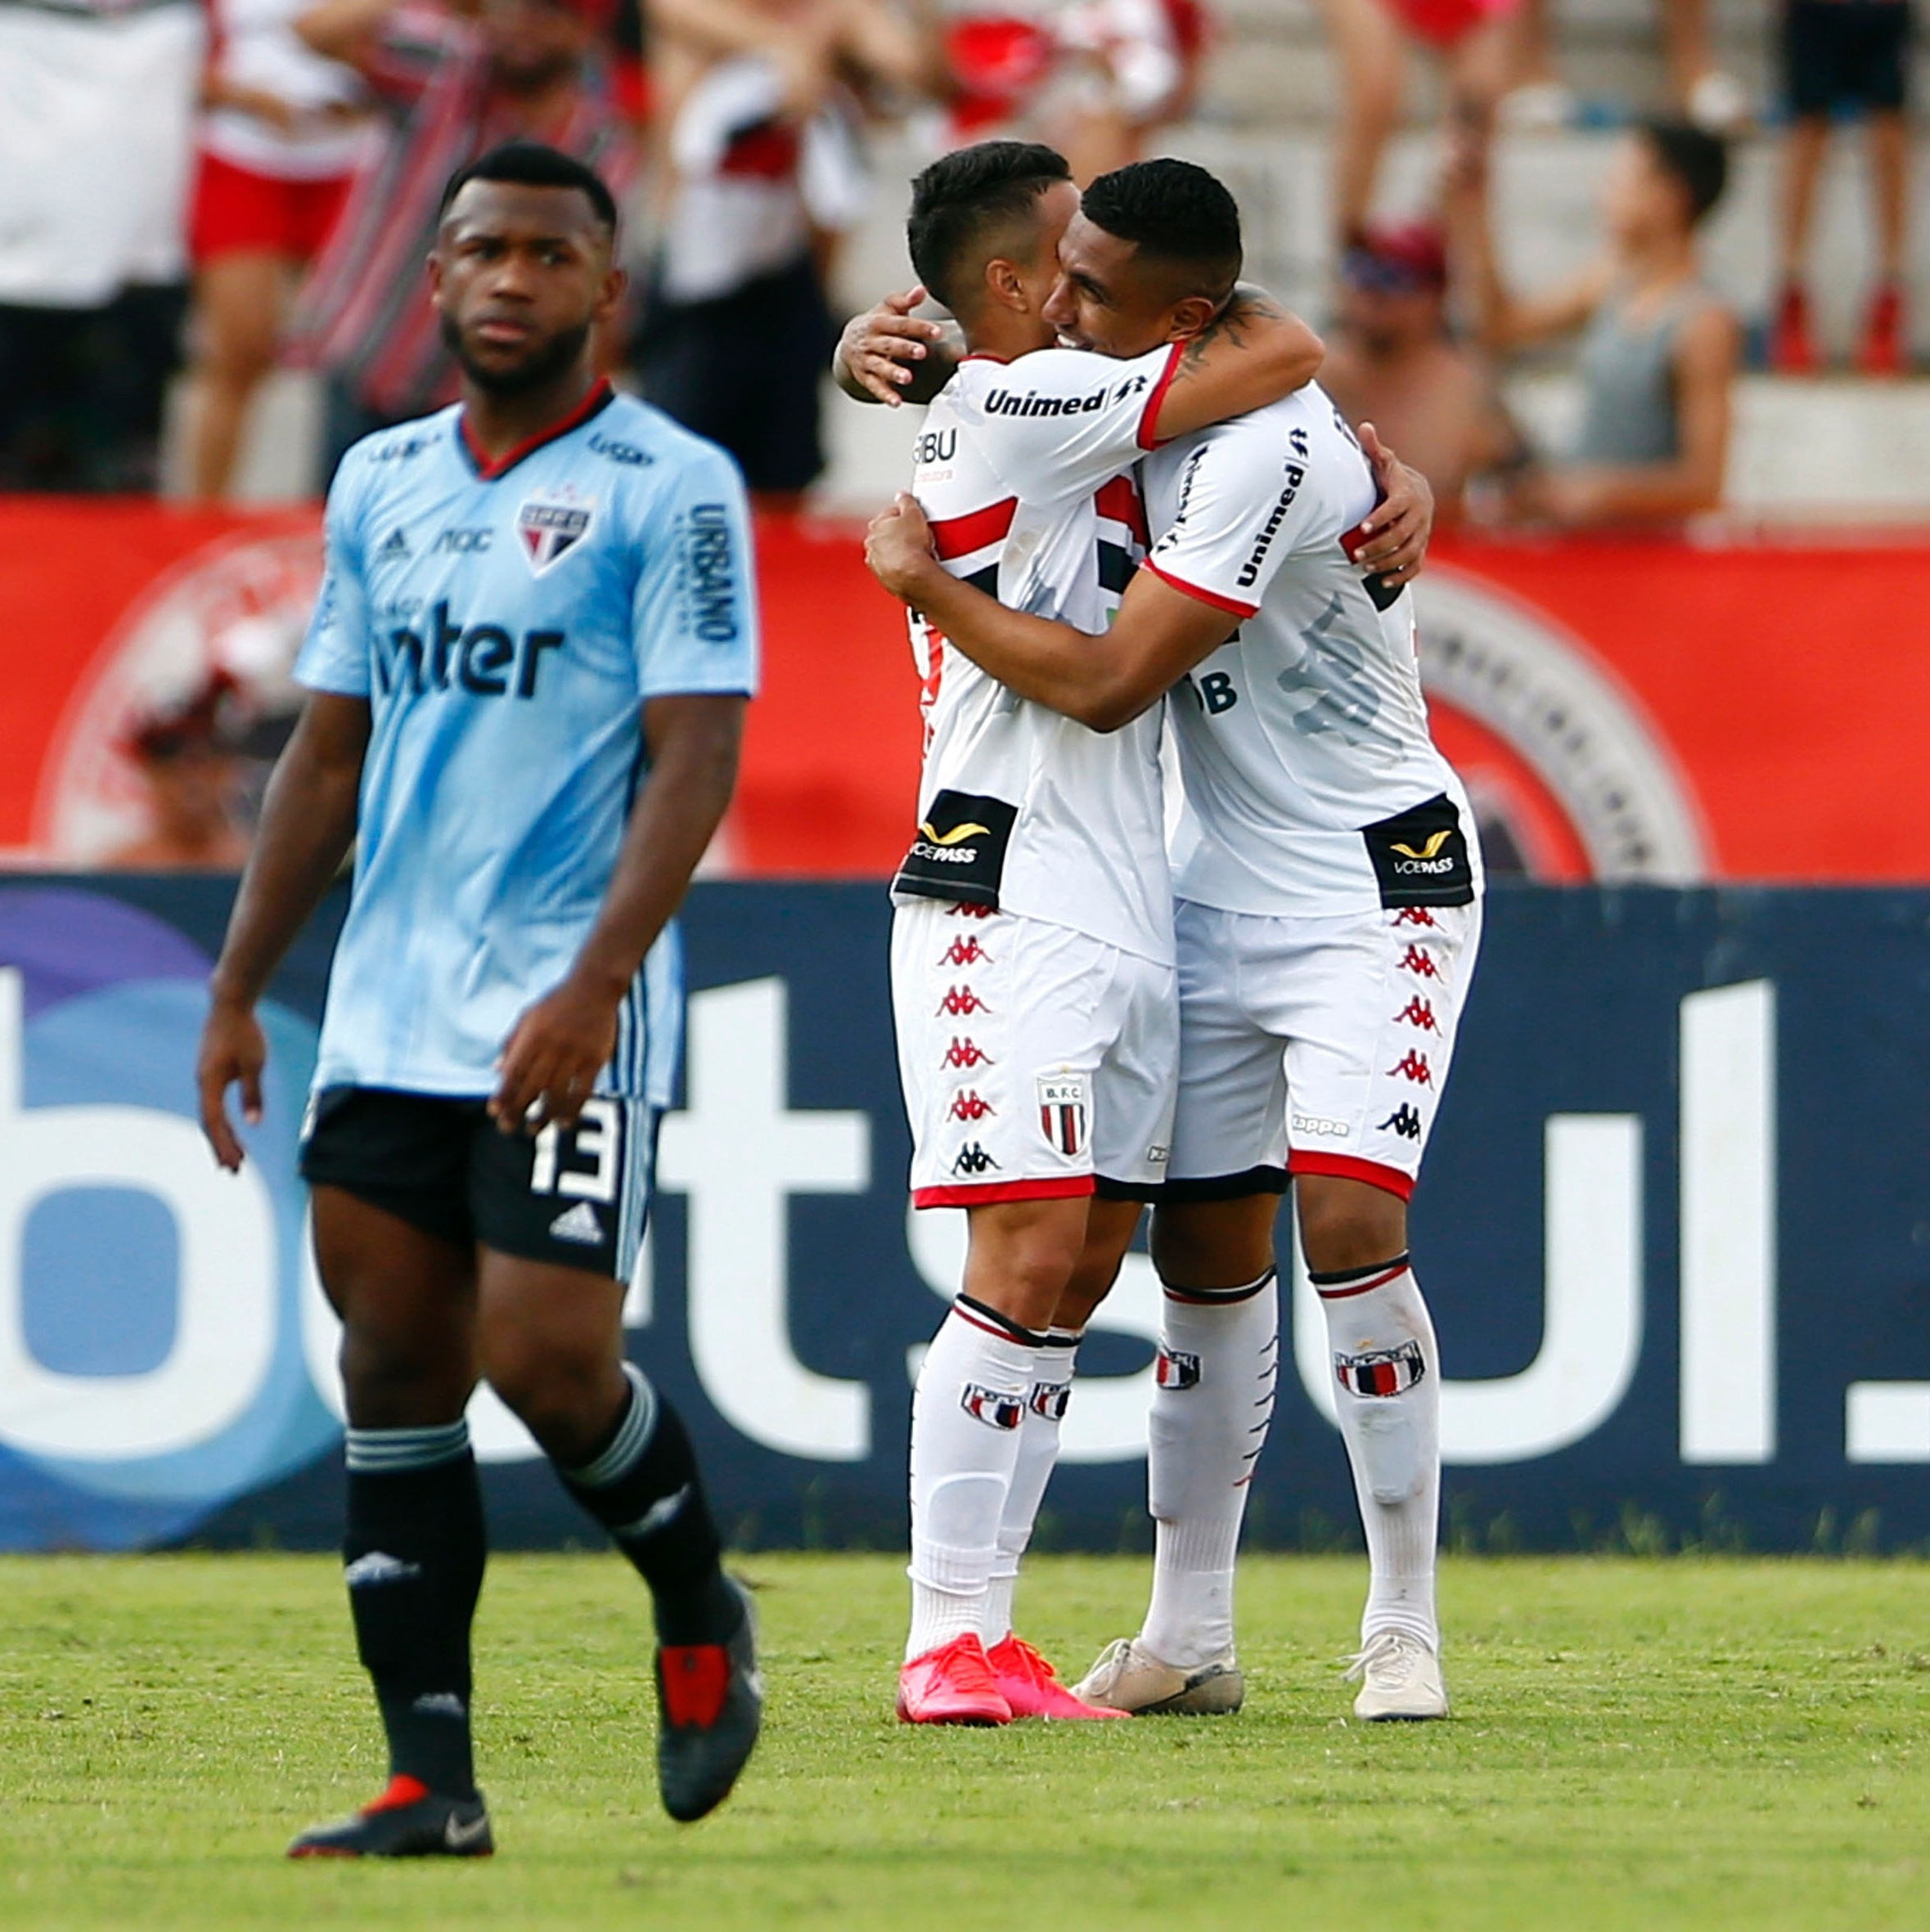 Botafogo está no Grupo B do Campeonato Paulista 2020 - Revide